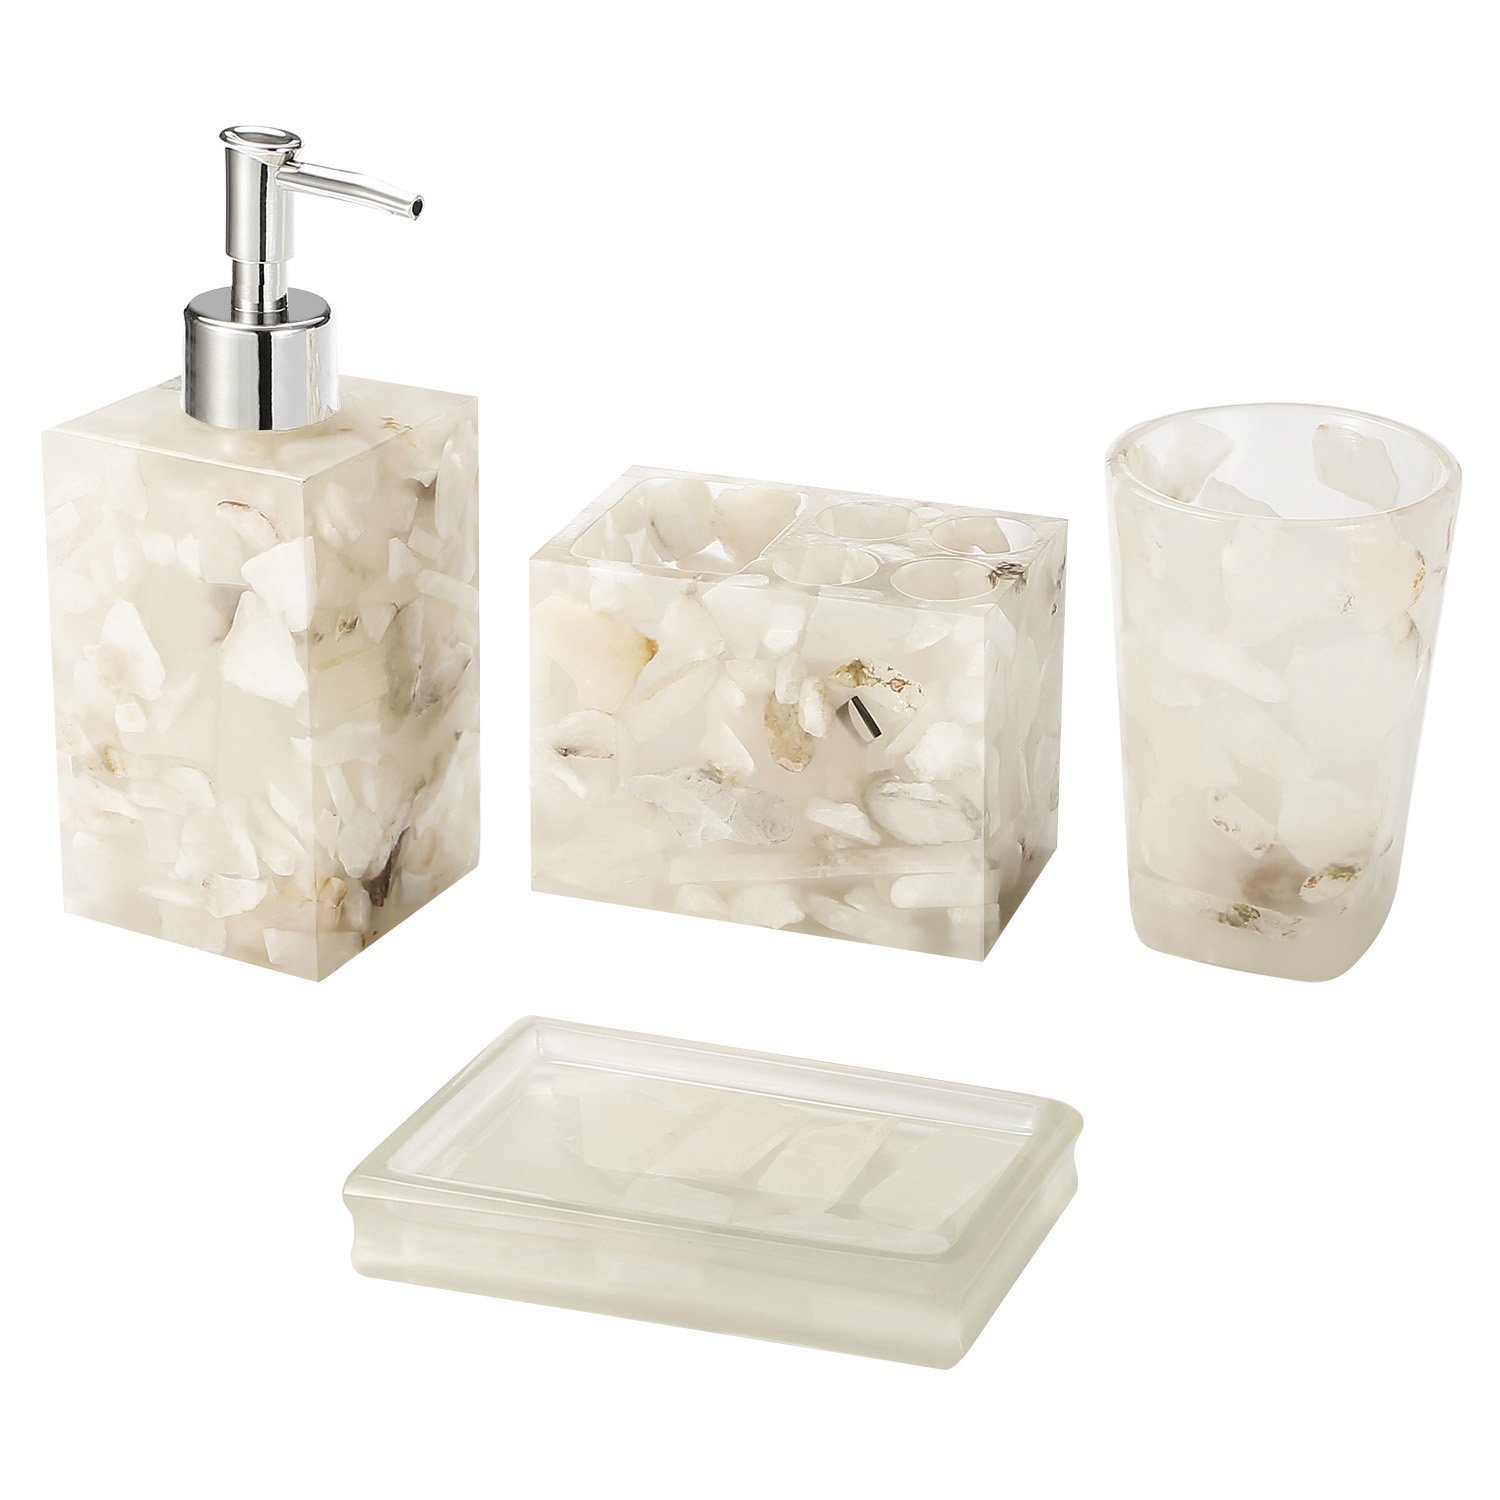 Акриловые наборы для ванной. Bath Plus дозатор для ванной Полирезин. Набор для ванной Marble мрамор полирезина. Набор для ванной комнаты DV-58822. Набор для ванной Navajo APUS 4 Set Mint.